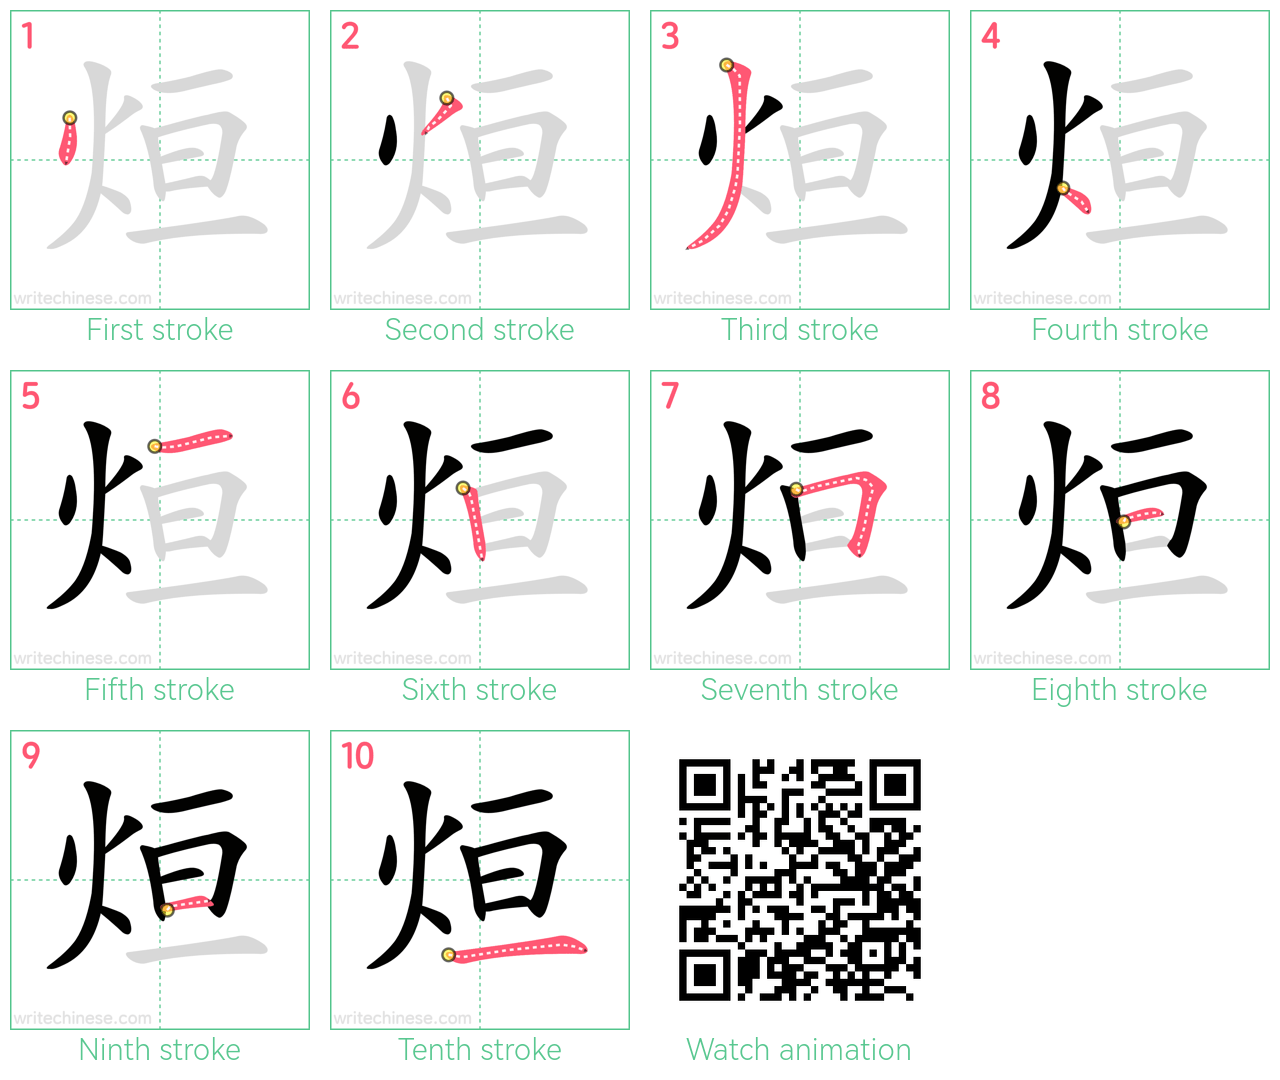 烜 step-by-step stroke order diagrams